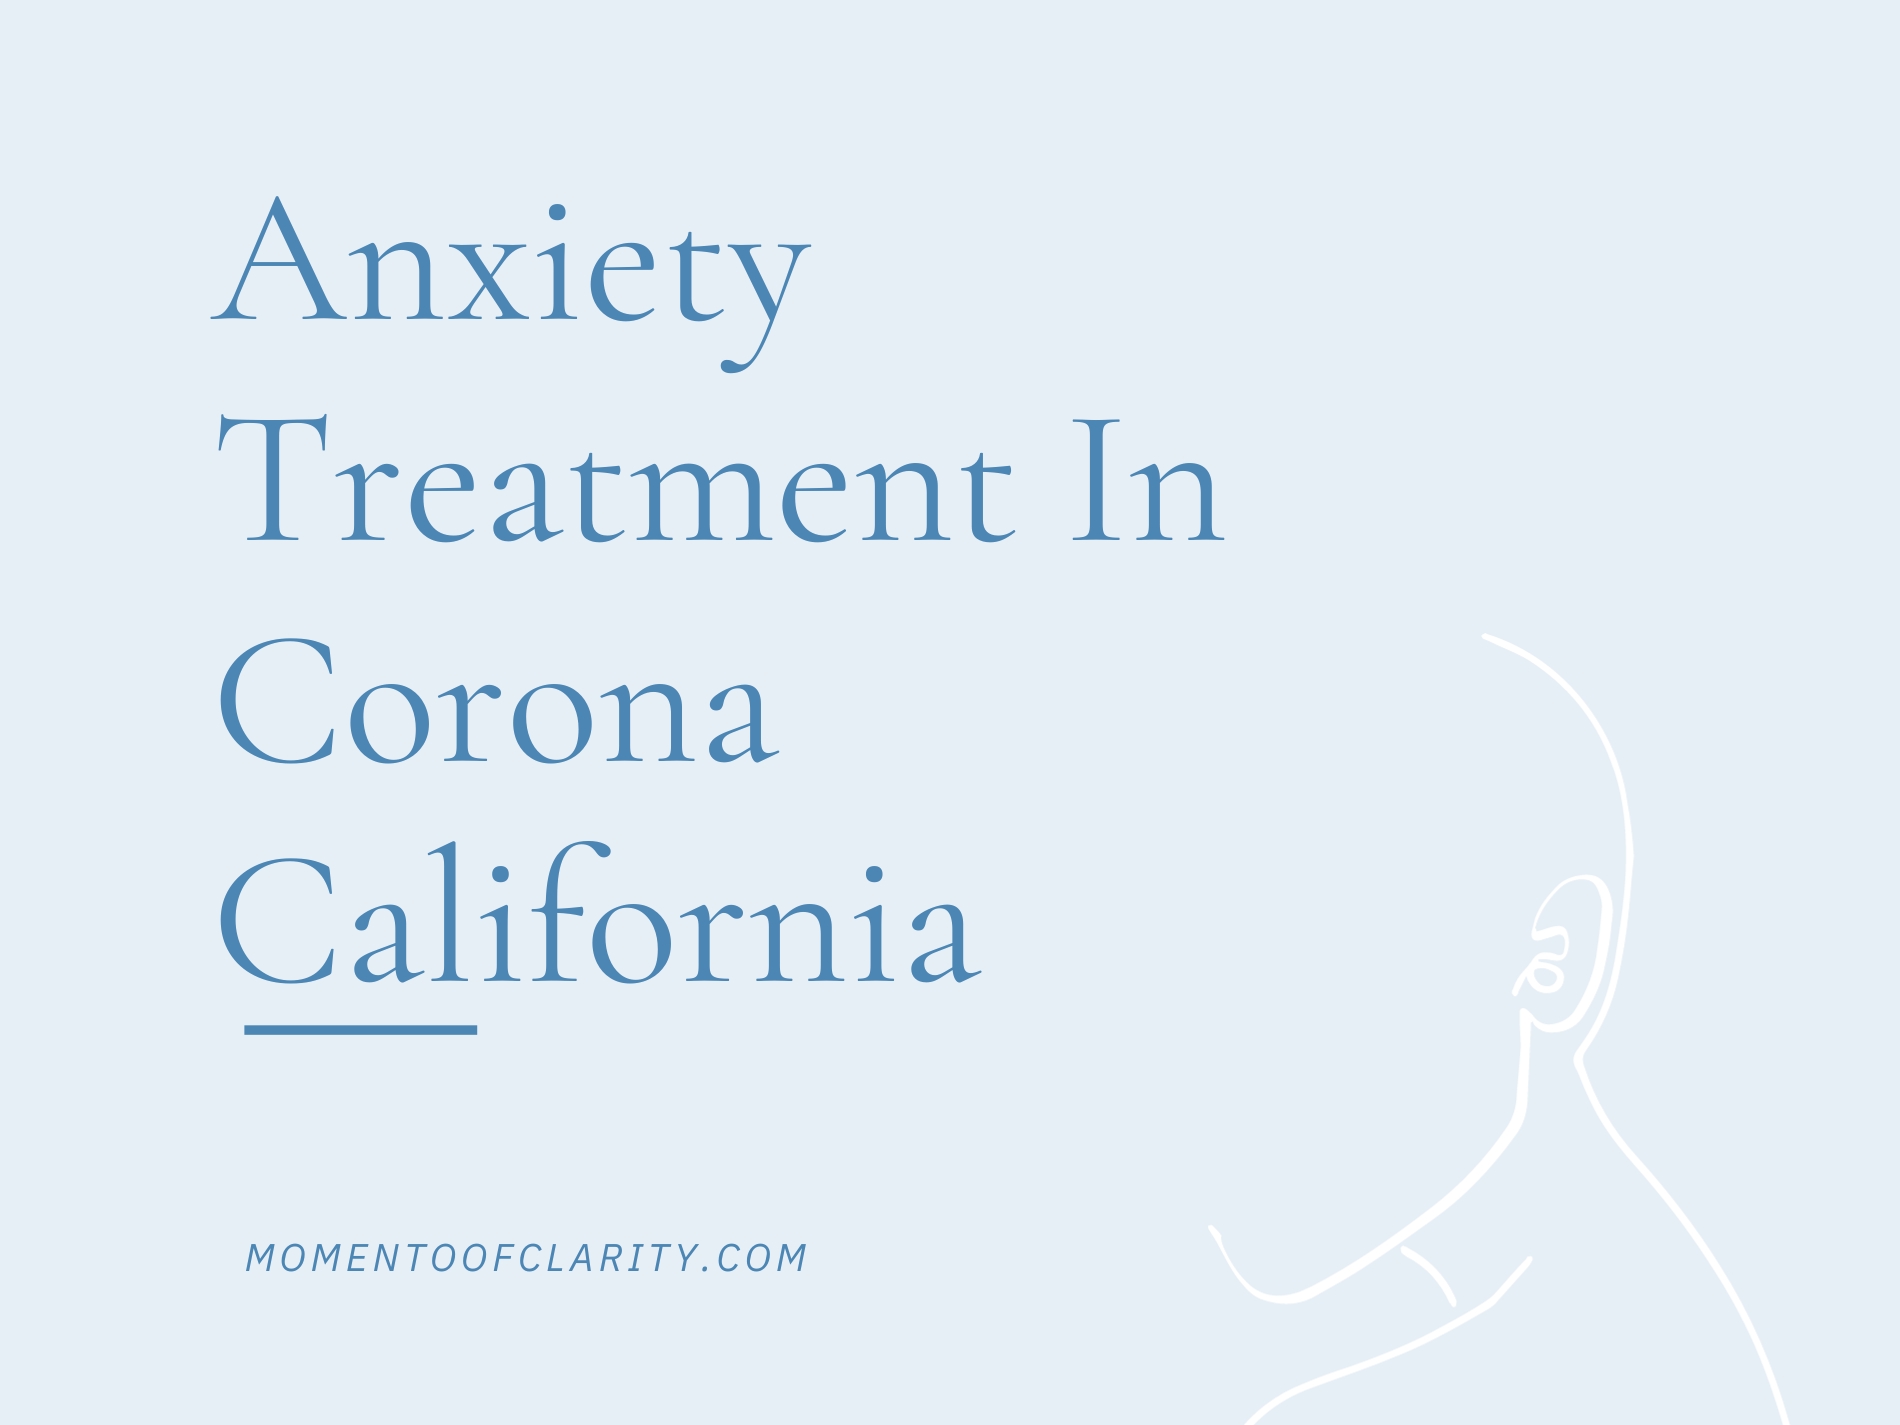 Anxiety Treatment In Corona, California